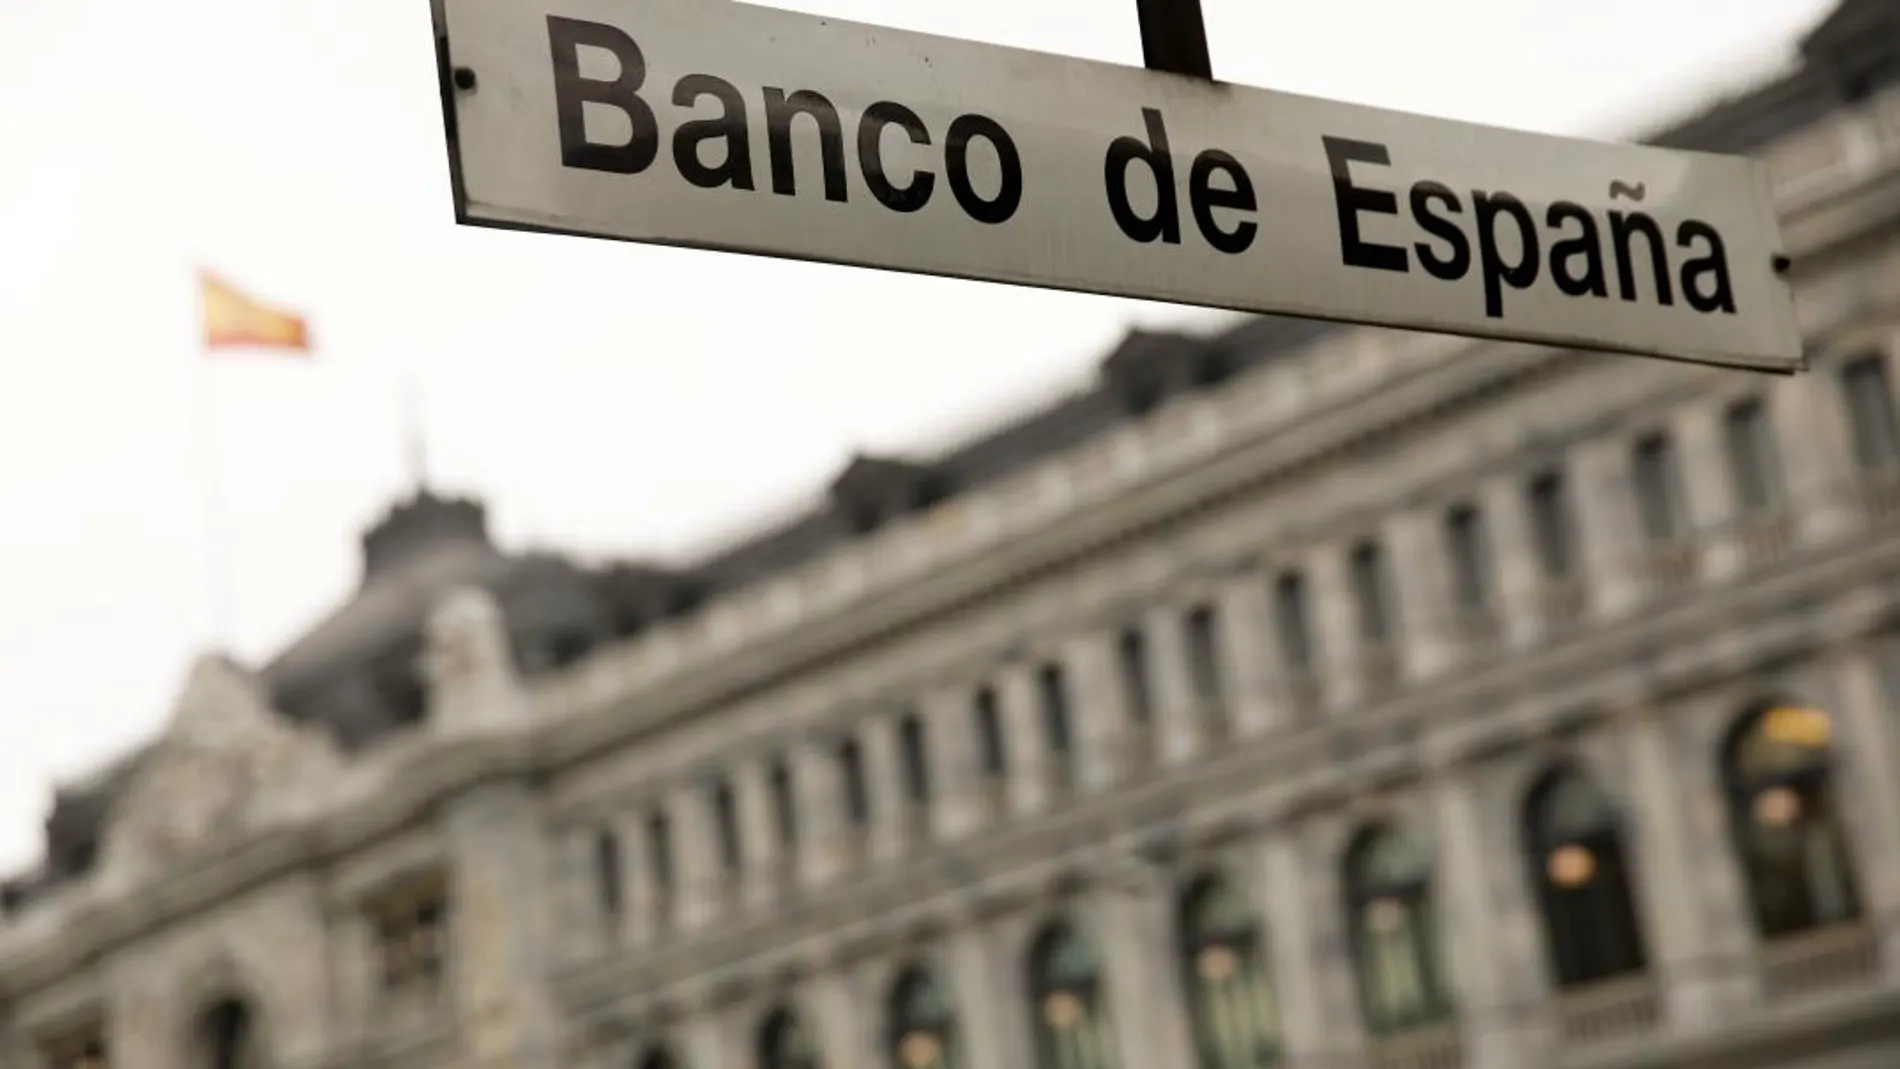 El Banco de España ha publicado hoy sus proyecciones macroeconómicas para el periodo 2018-2020